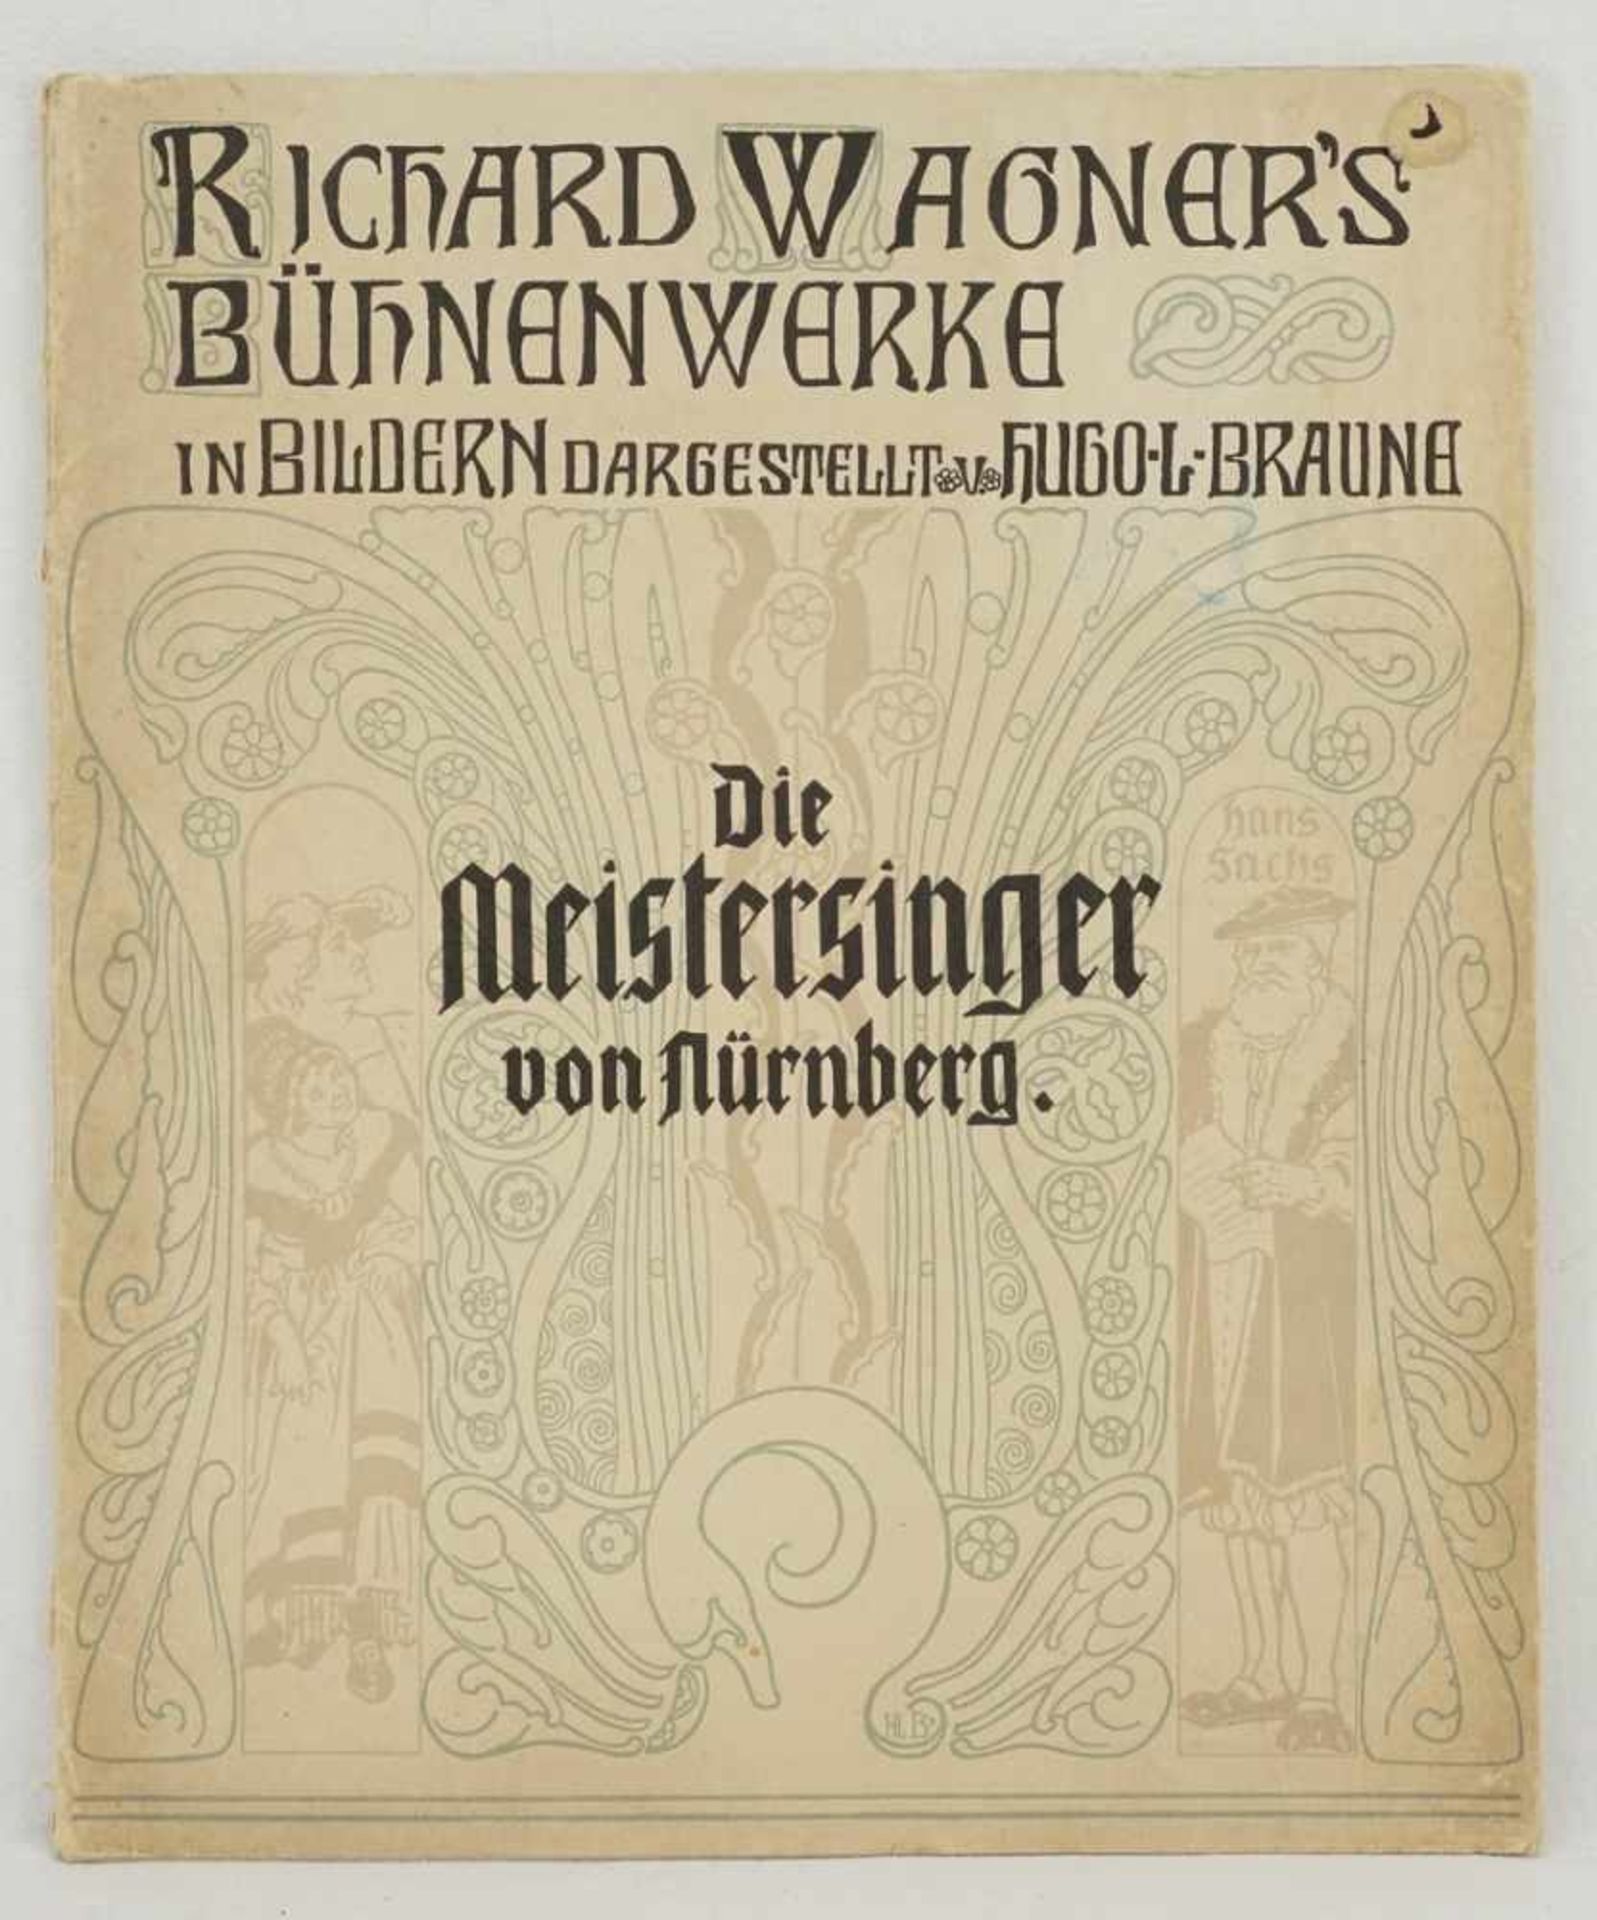 Hugo L. Braune, "Die Meistersinger von Nürnberg von Richard Wagner"